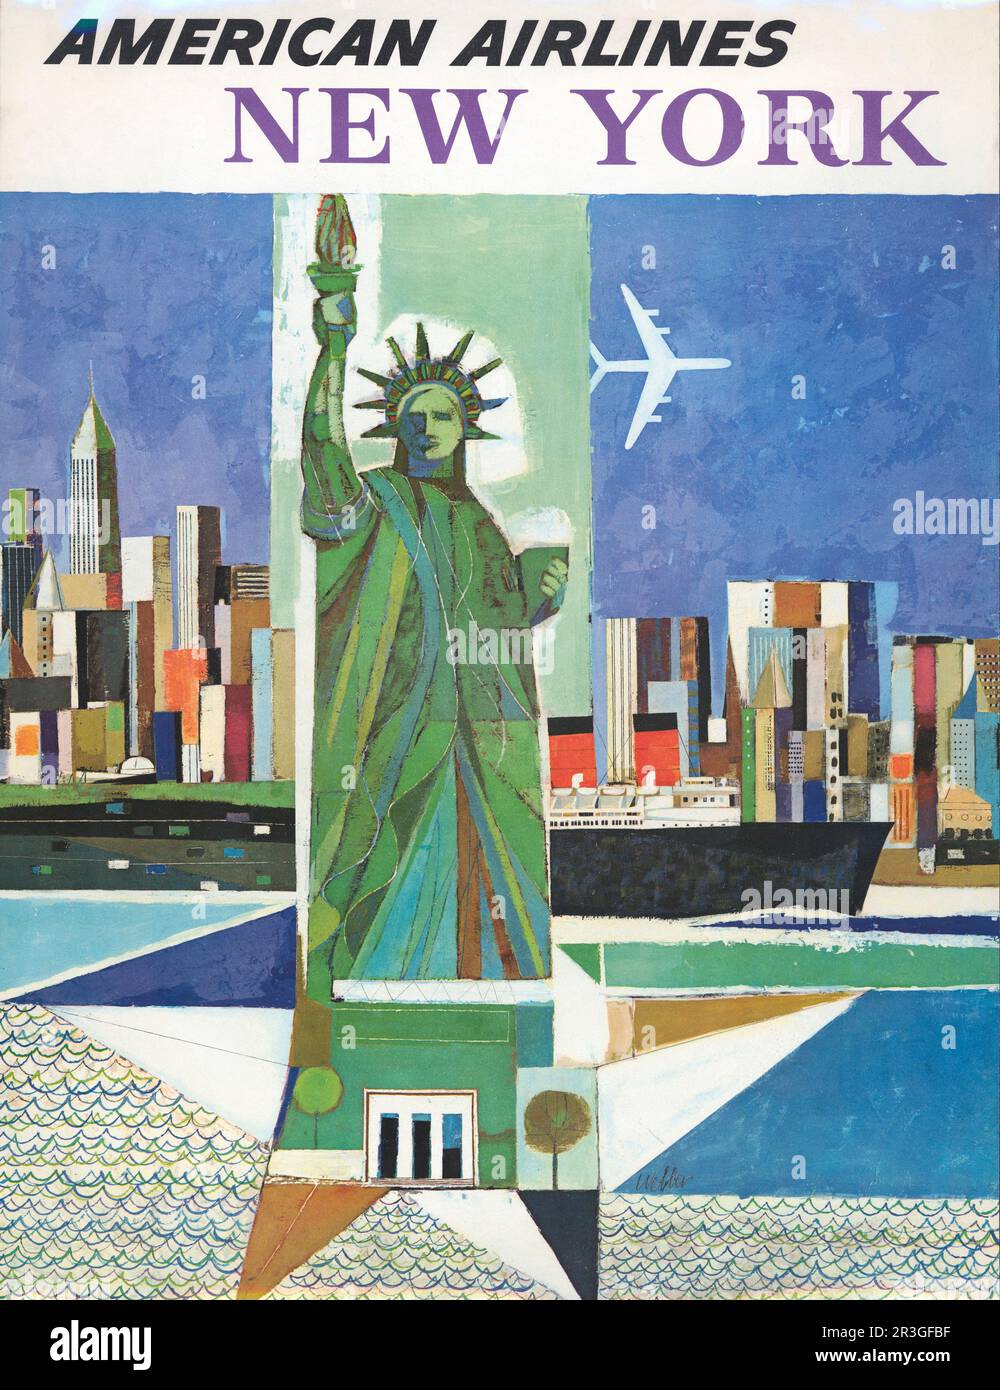 Affiche de voyage vintage pour American Airlines, New York, vers 1964. Banque D'Images